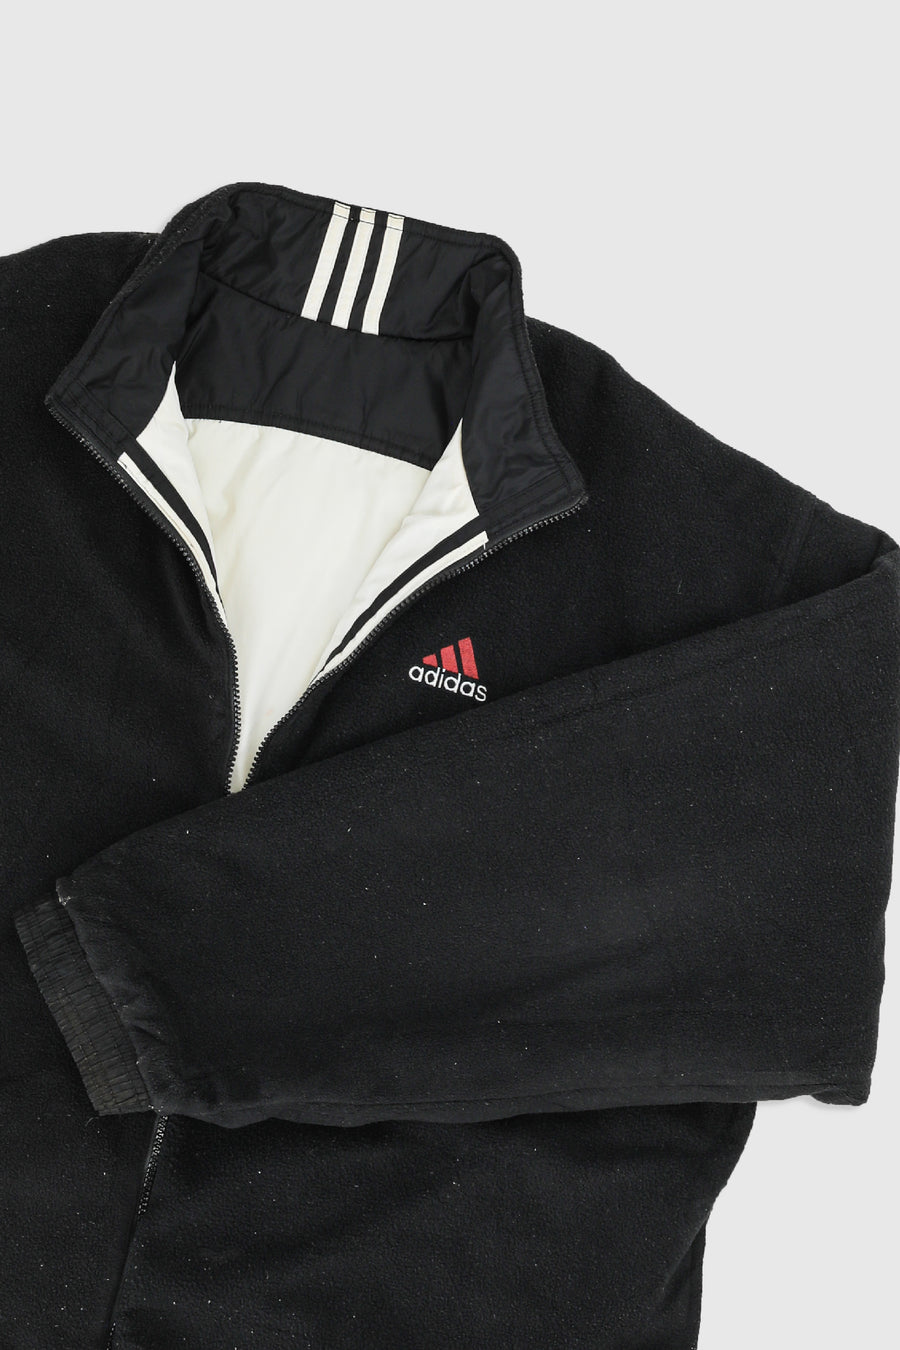 Vintage Adidas Fleece Jacket